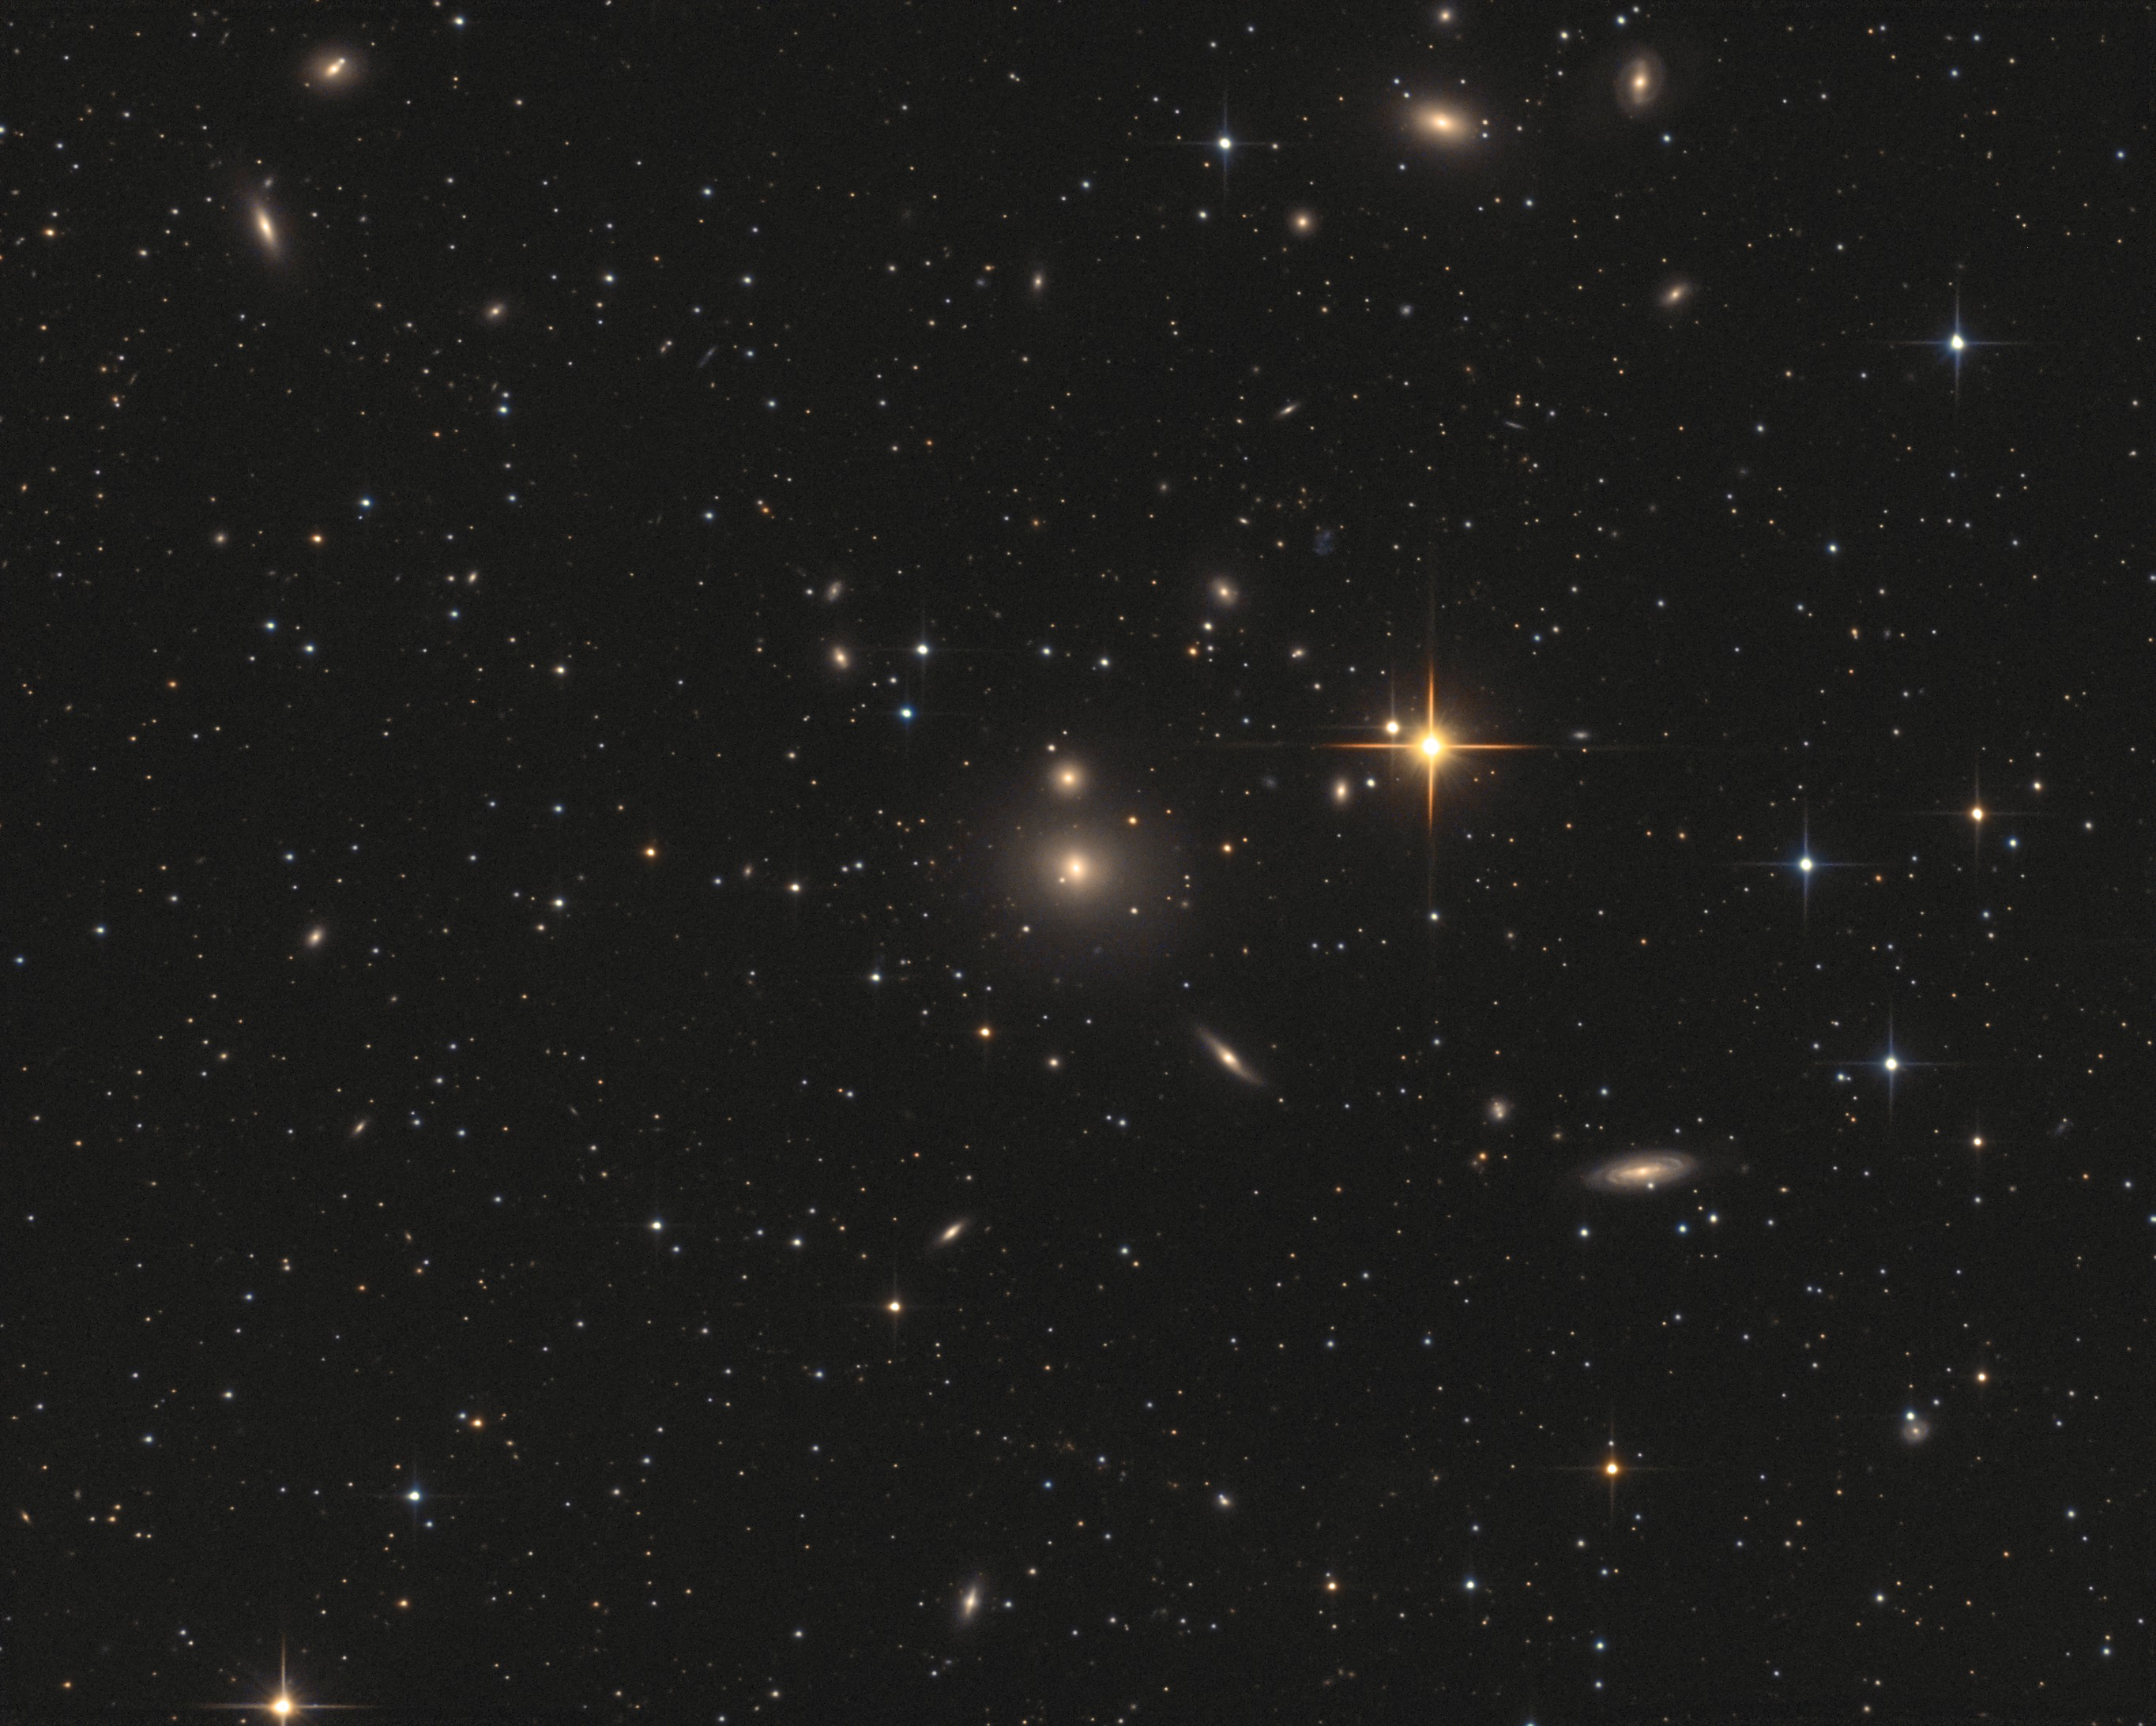 Galaxies dans le poisson, Arp229 Picture-92c147562451d1d1668d42ee1eca42ae-original